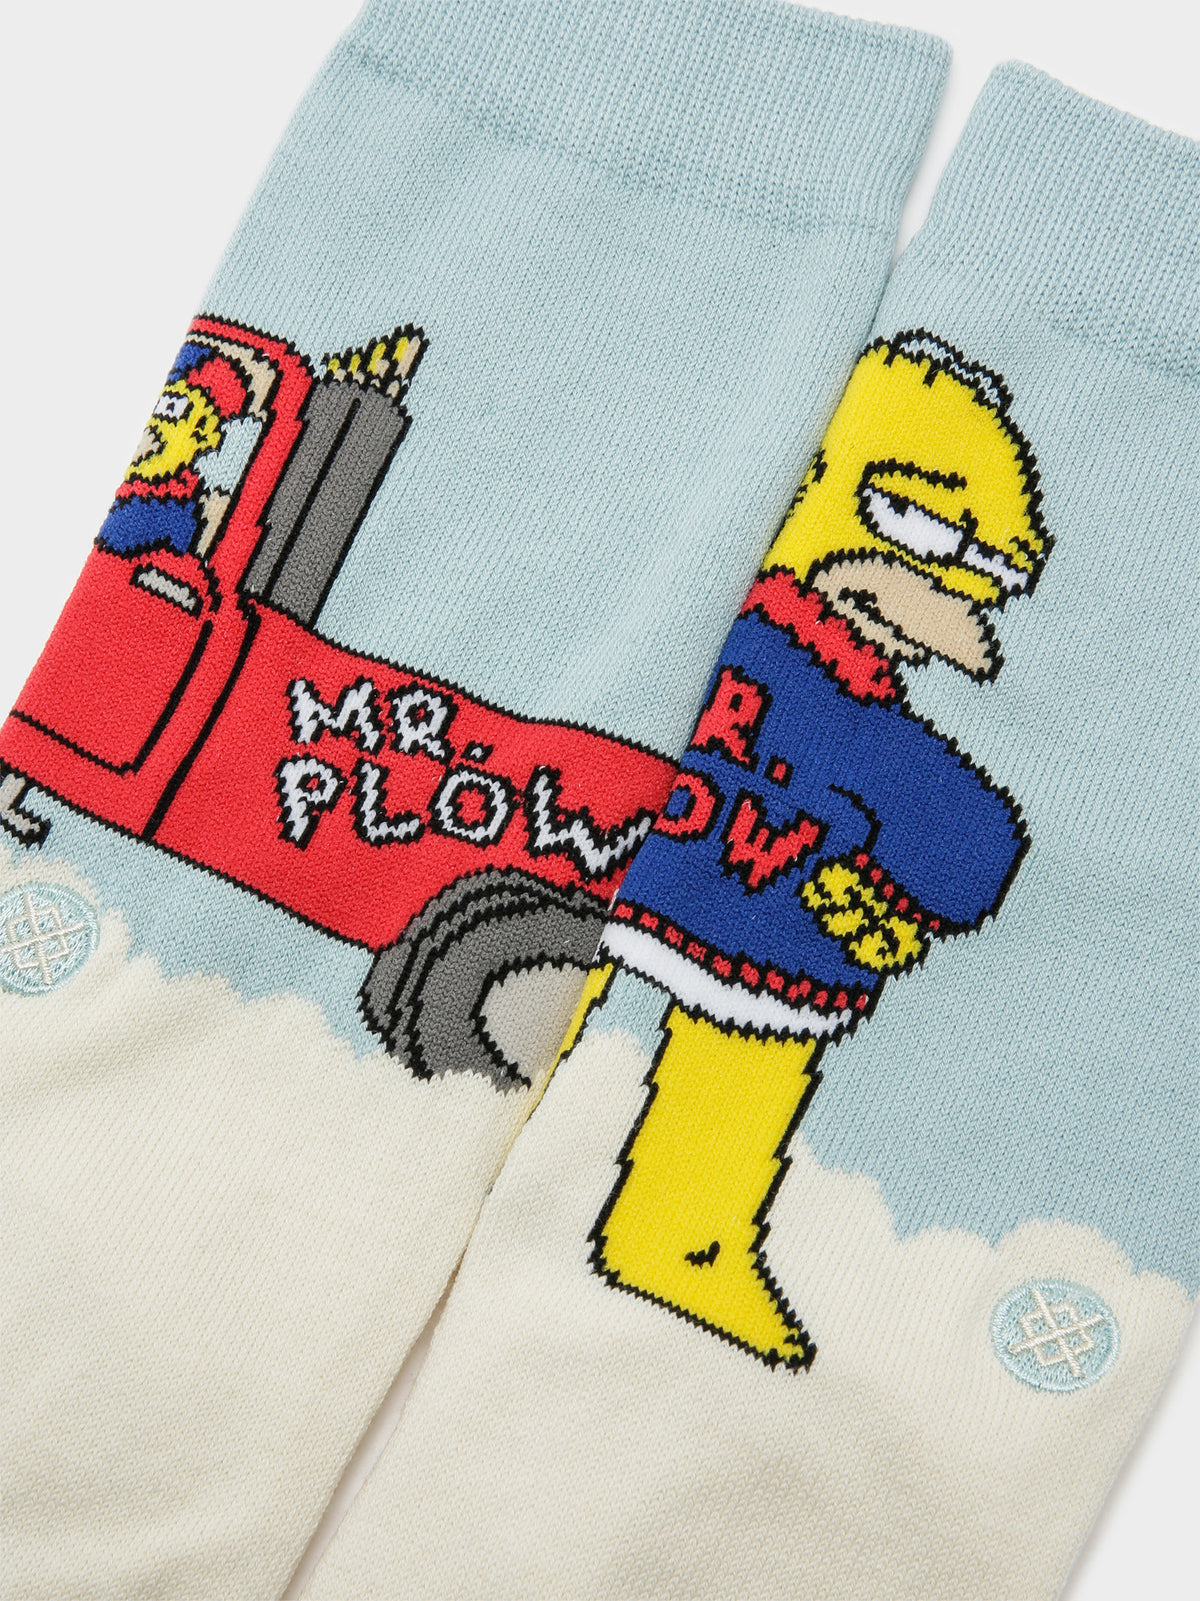 1 Pair of Mr Plow Simpsons Socks in Blue